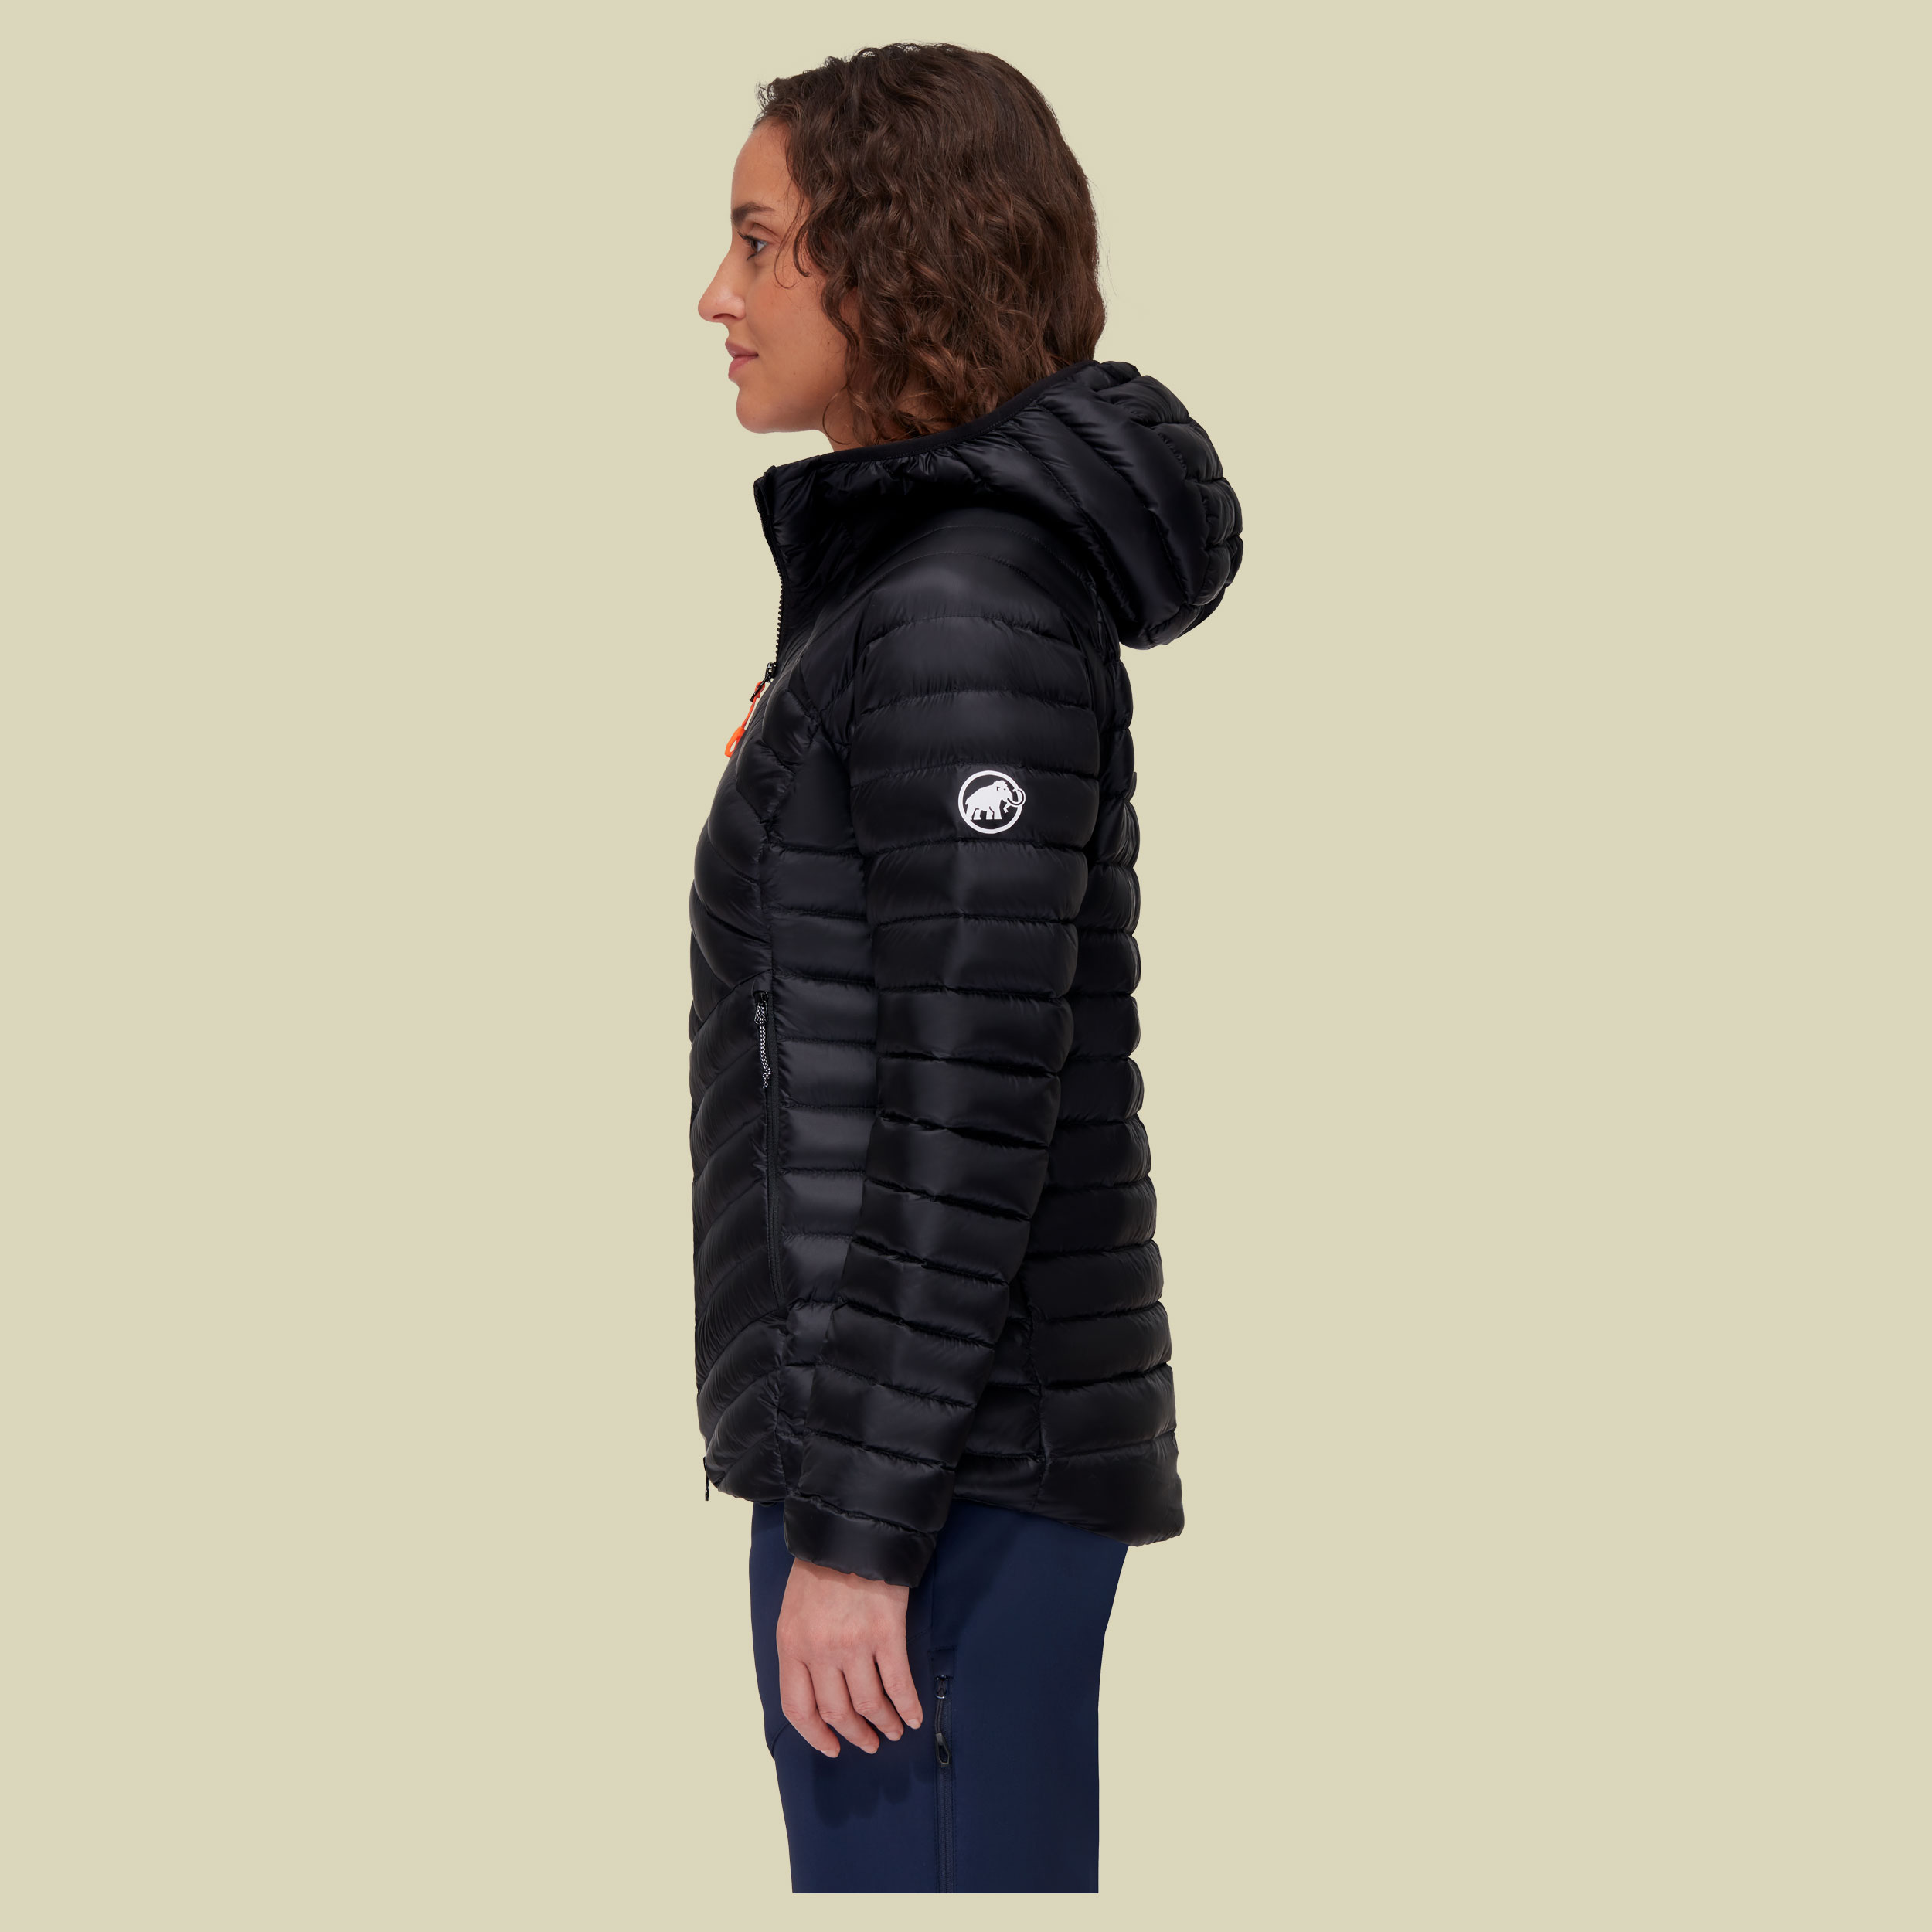 Broad Peak IN Hooded Jacket Women Größe M  Farbe black